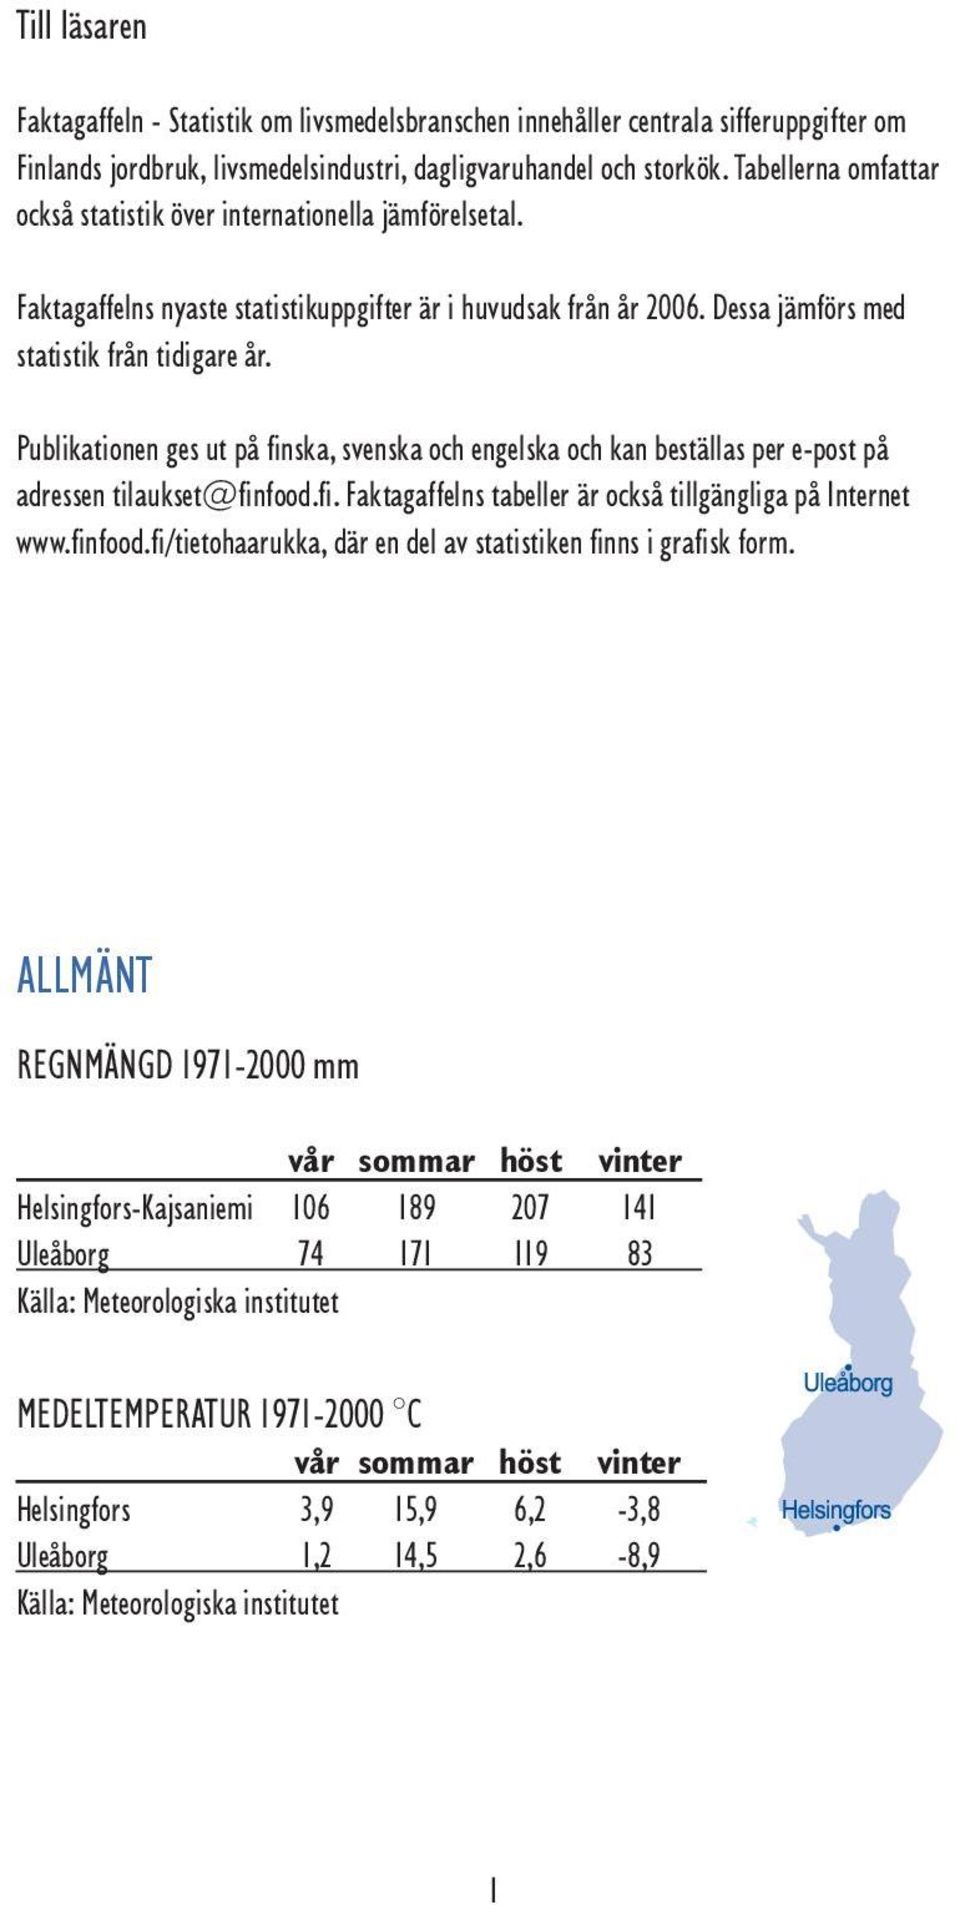 Publikationen ges ut på finska, svenska och engelska och kan beställas per e-post på adressen tilaukset@finfood.fi. Faktagaffelns tabeller är också tillgängliga på Internet www.finfood.fi/tietohaarukka, där en del av statistiken finns i grafisk form.